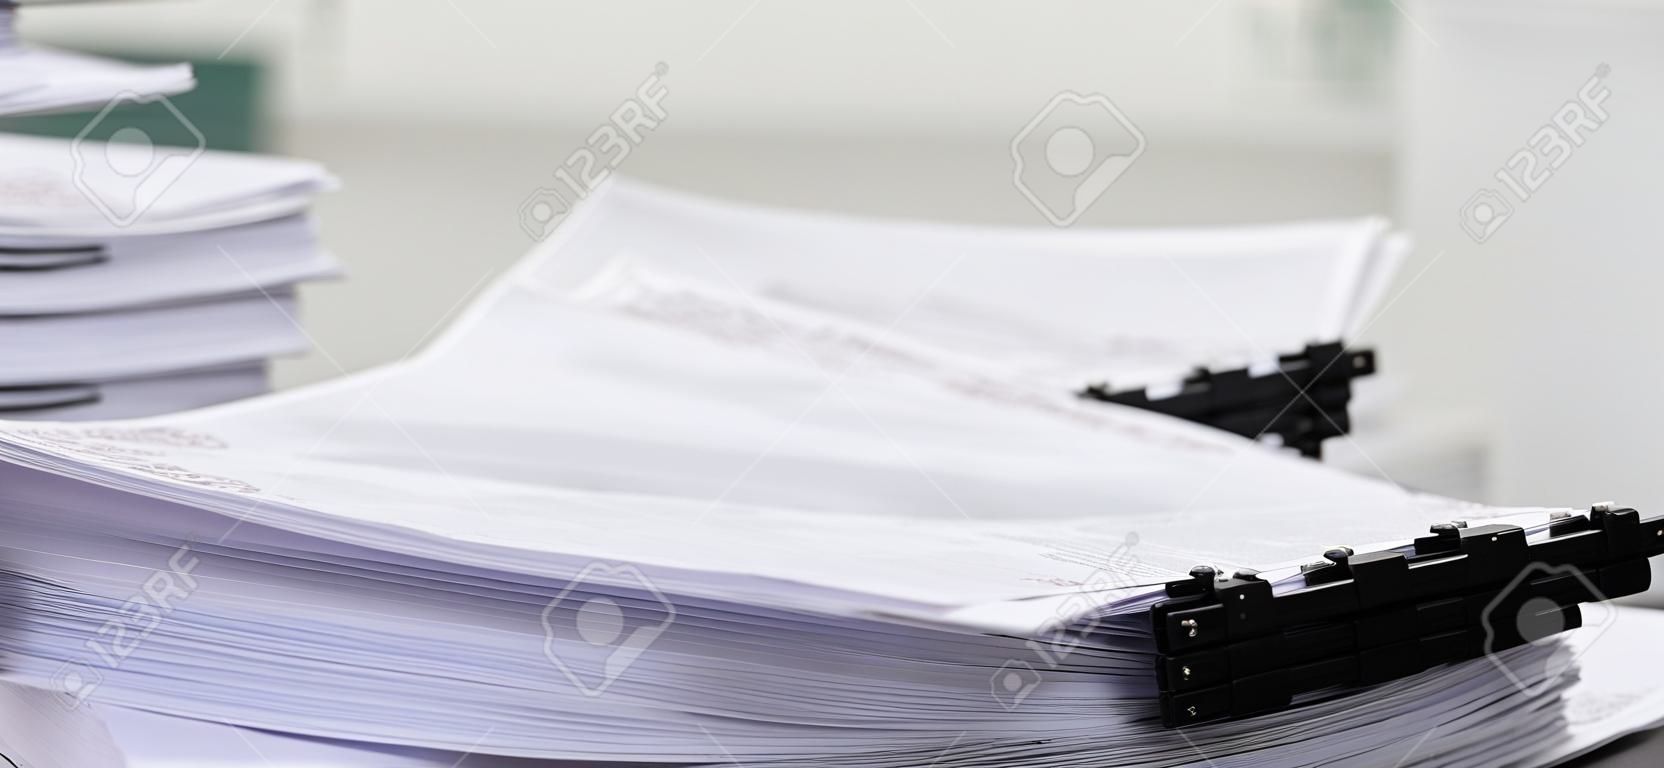 Stół biurowy w zbliżeniu z uporządkowanymi ułożonymi papierami jako koncepcja zorganizowanego systemu zarządzania dokumentami dla zapracowanych raportów biznesowych lub równości dokumentów prawnych